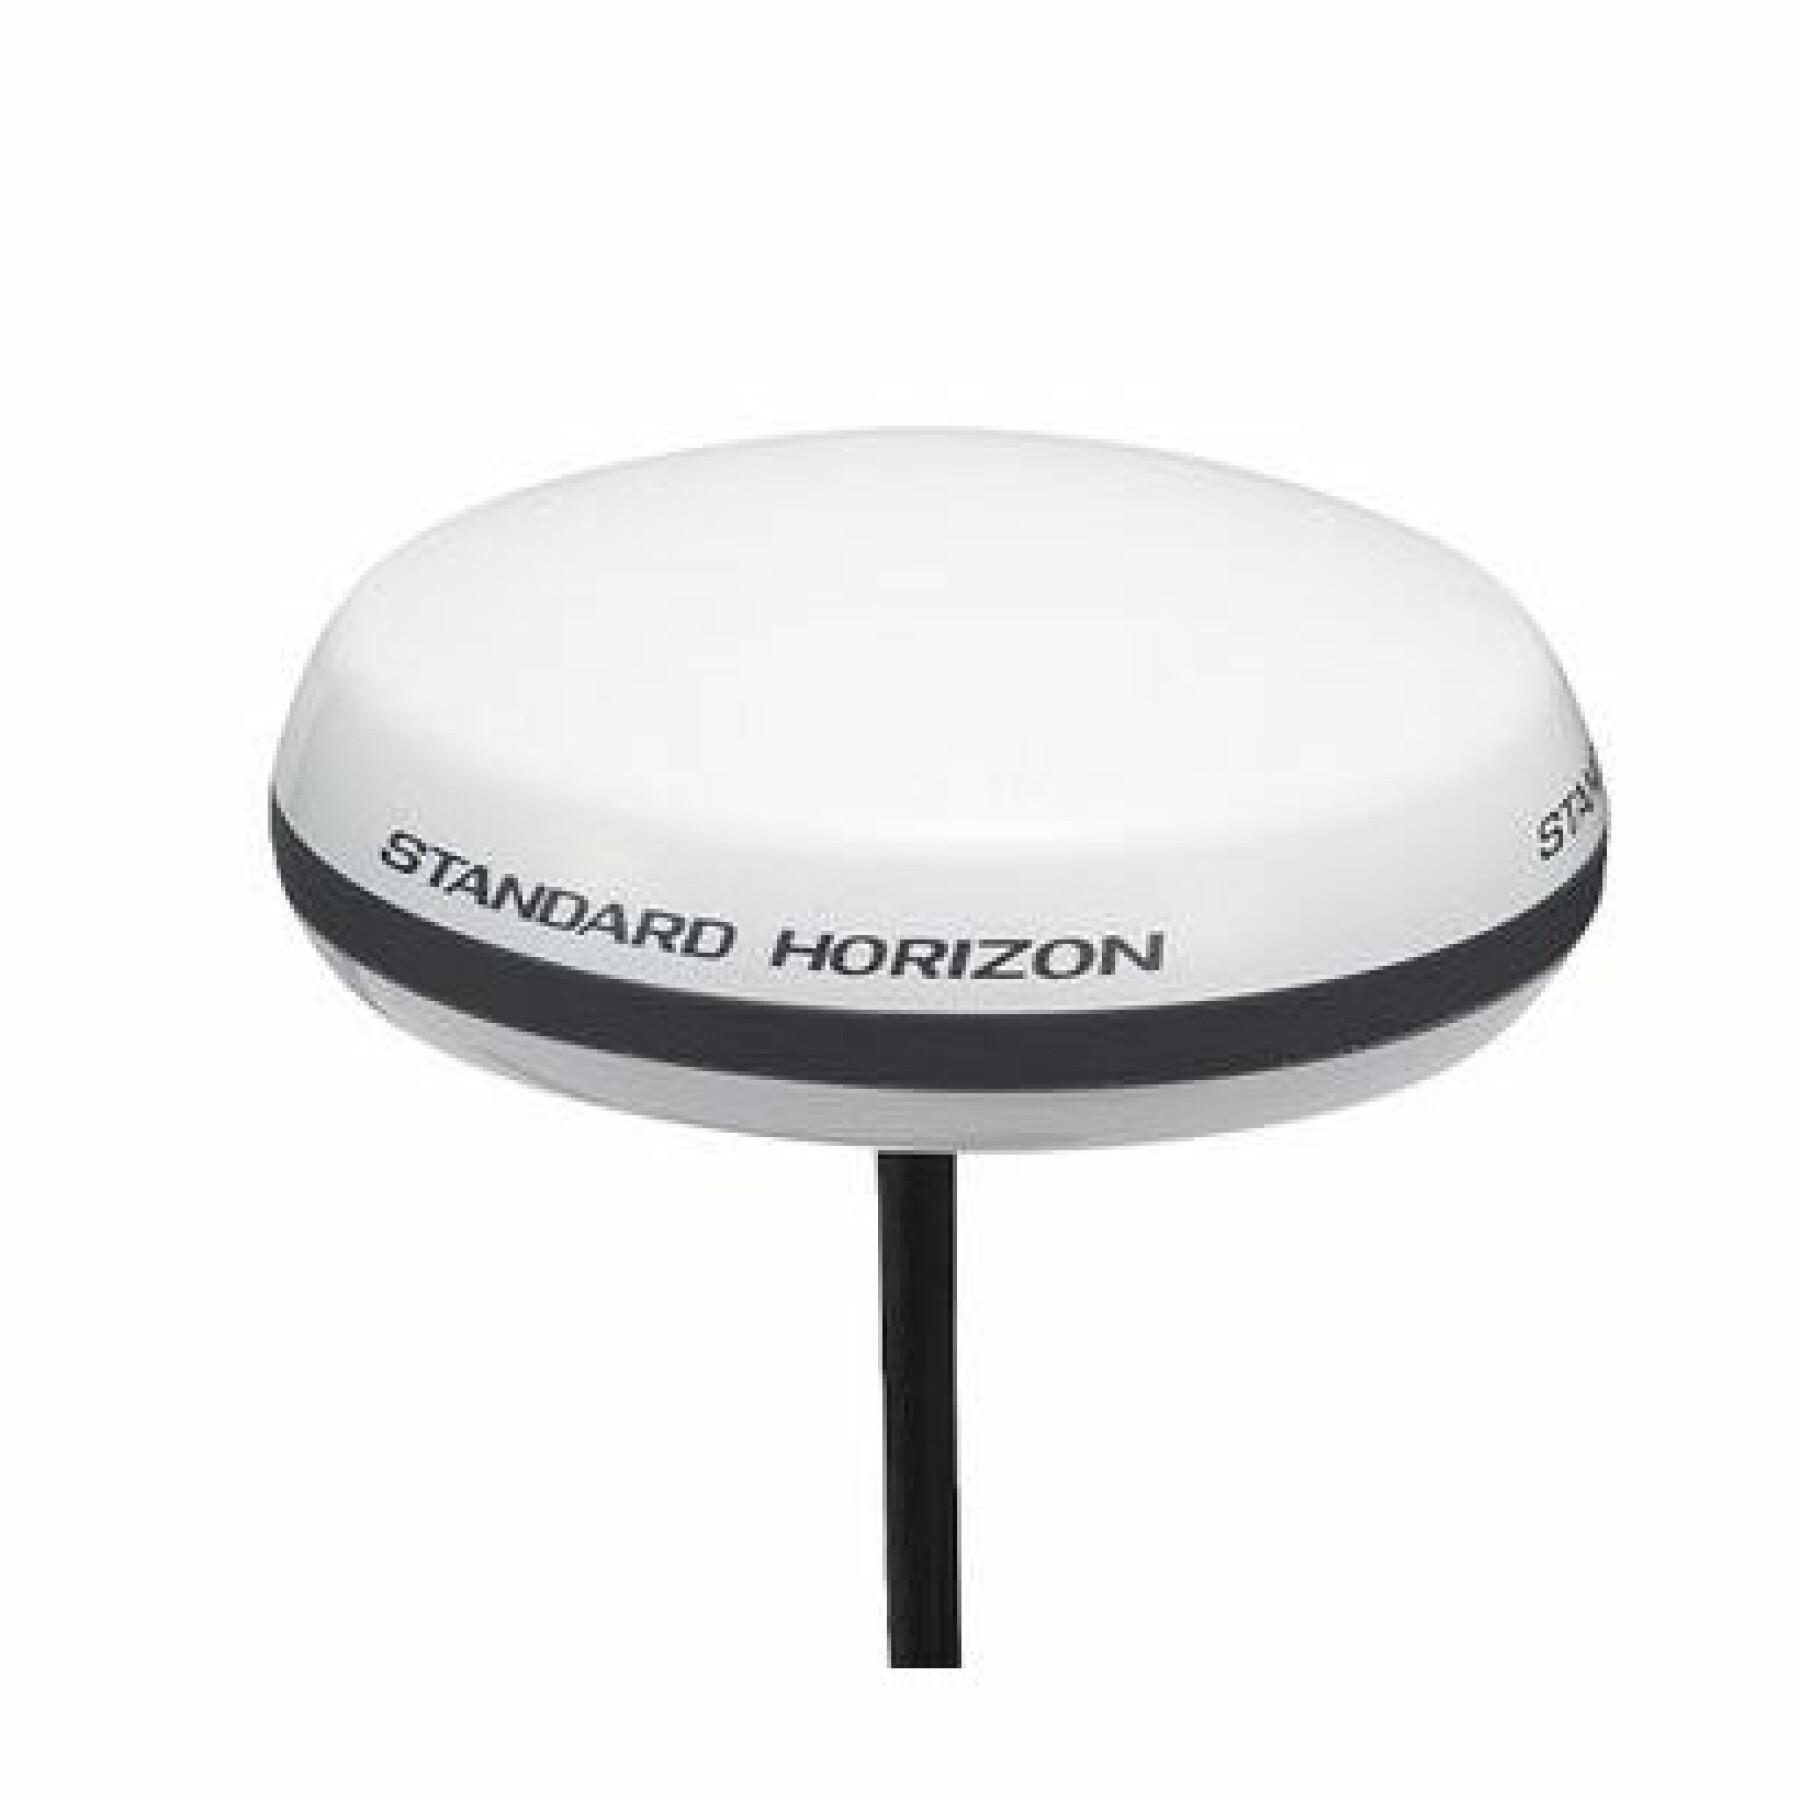 Trådlös accesspunkt Standard Horizon GX2400, 6000E et 6500E